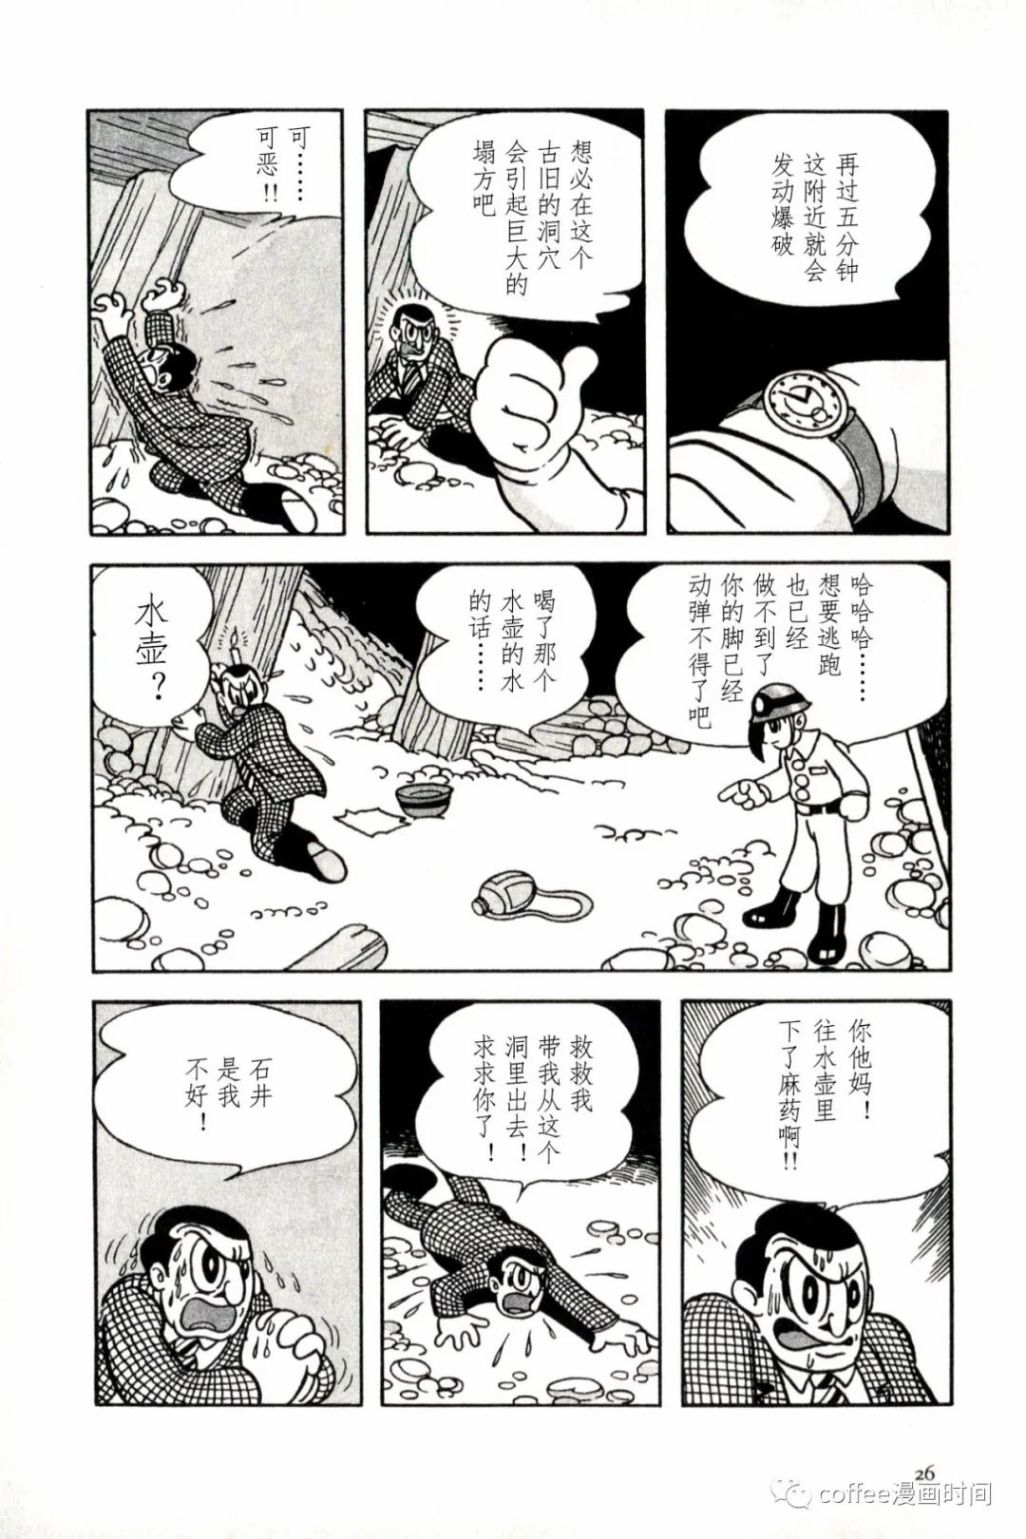 日本短篇漫畫傑作集 - 手冢治虫《落盤》 - 2